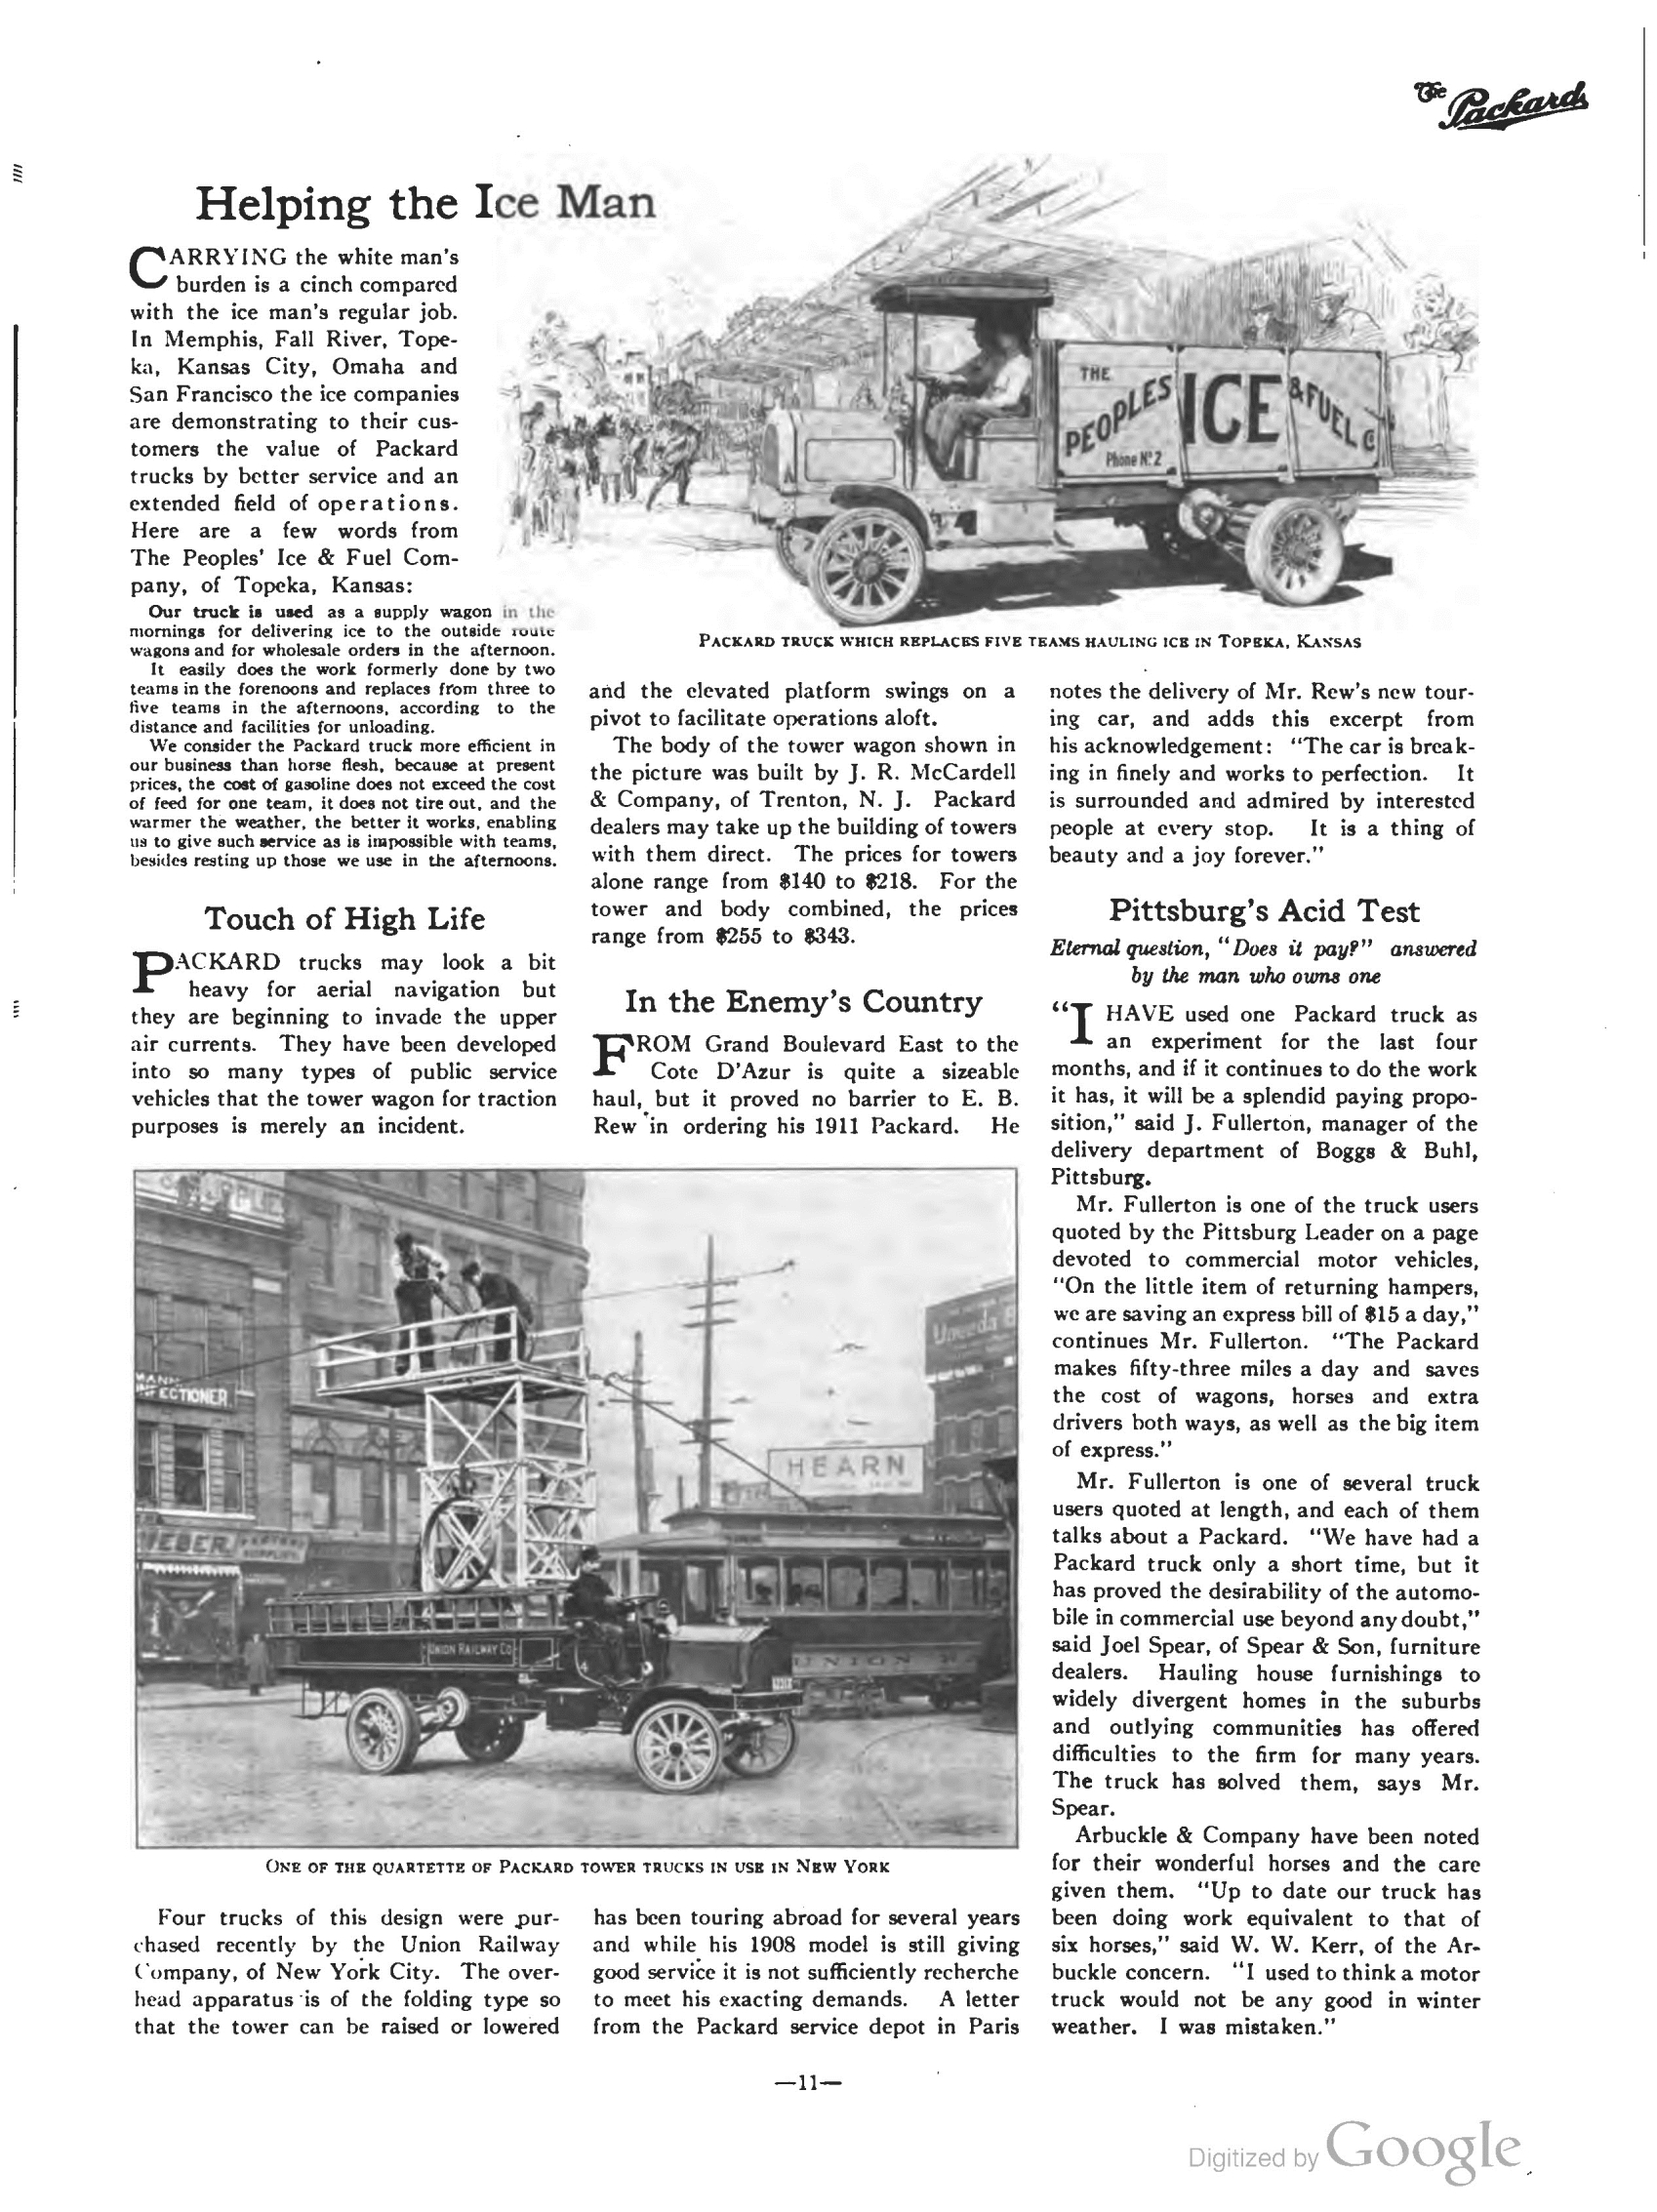 1911_The_Packard_Newsletter-033